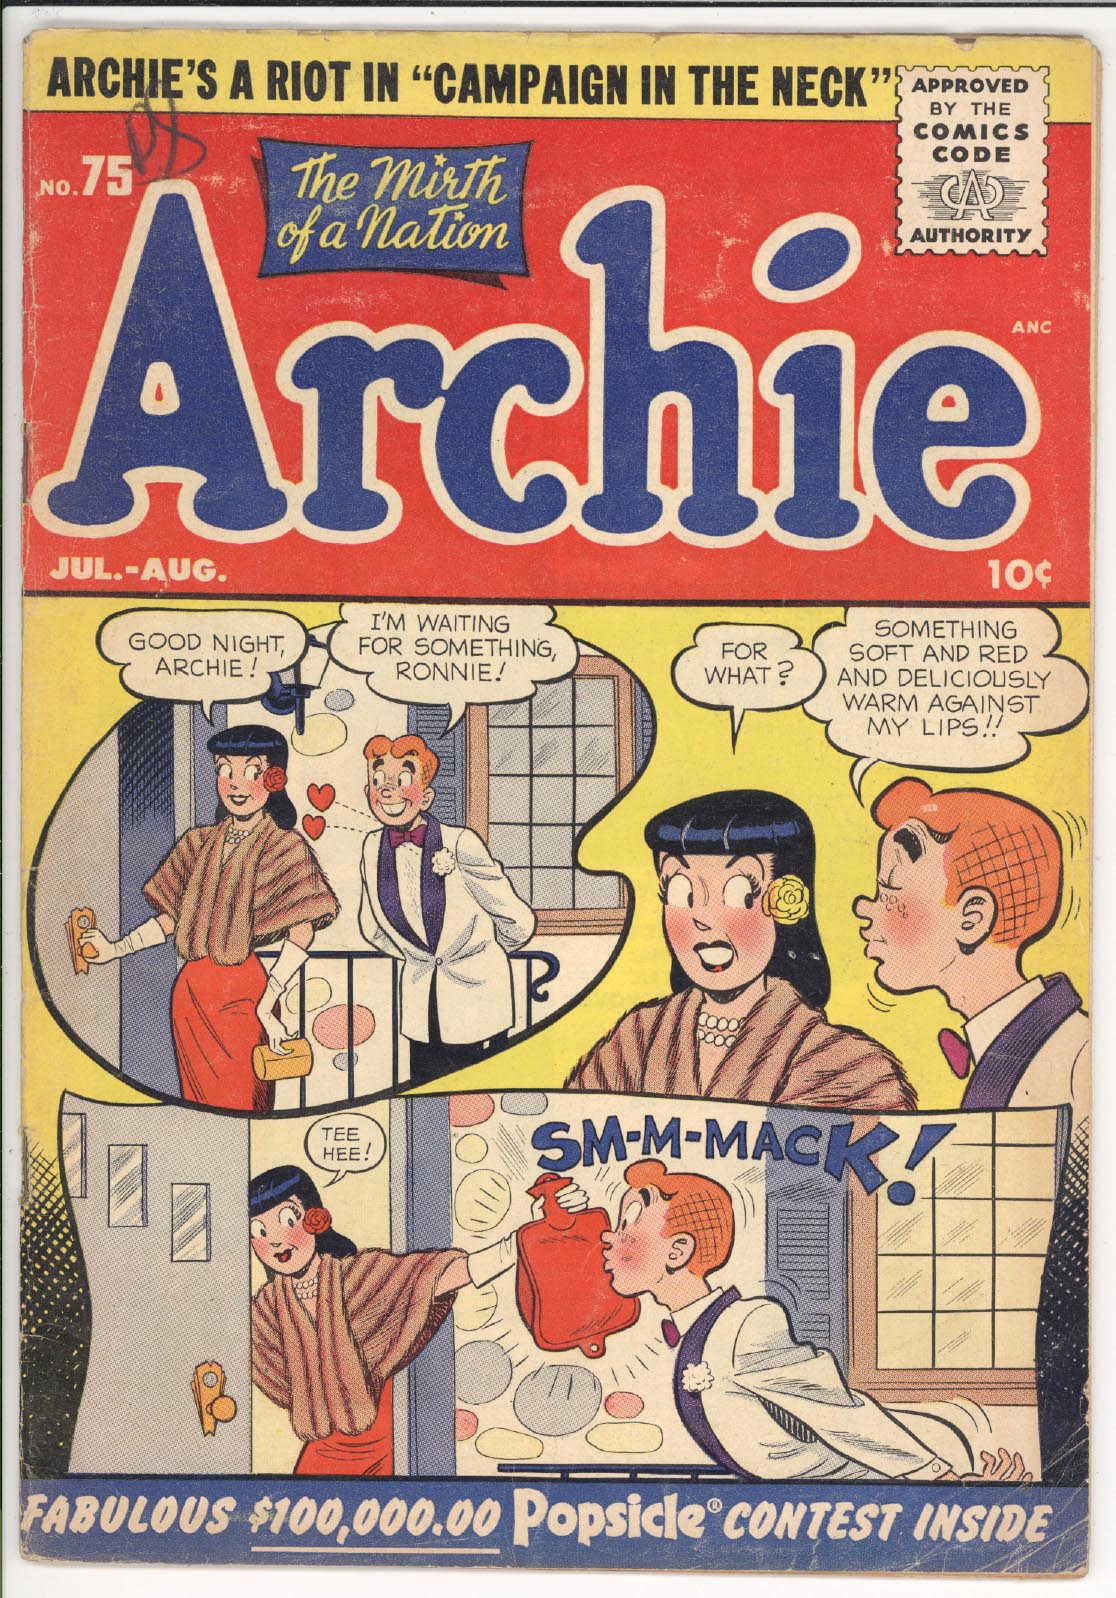 Archie comics #75 front